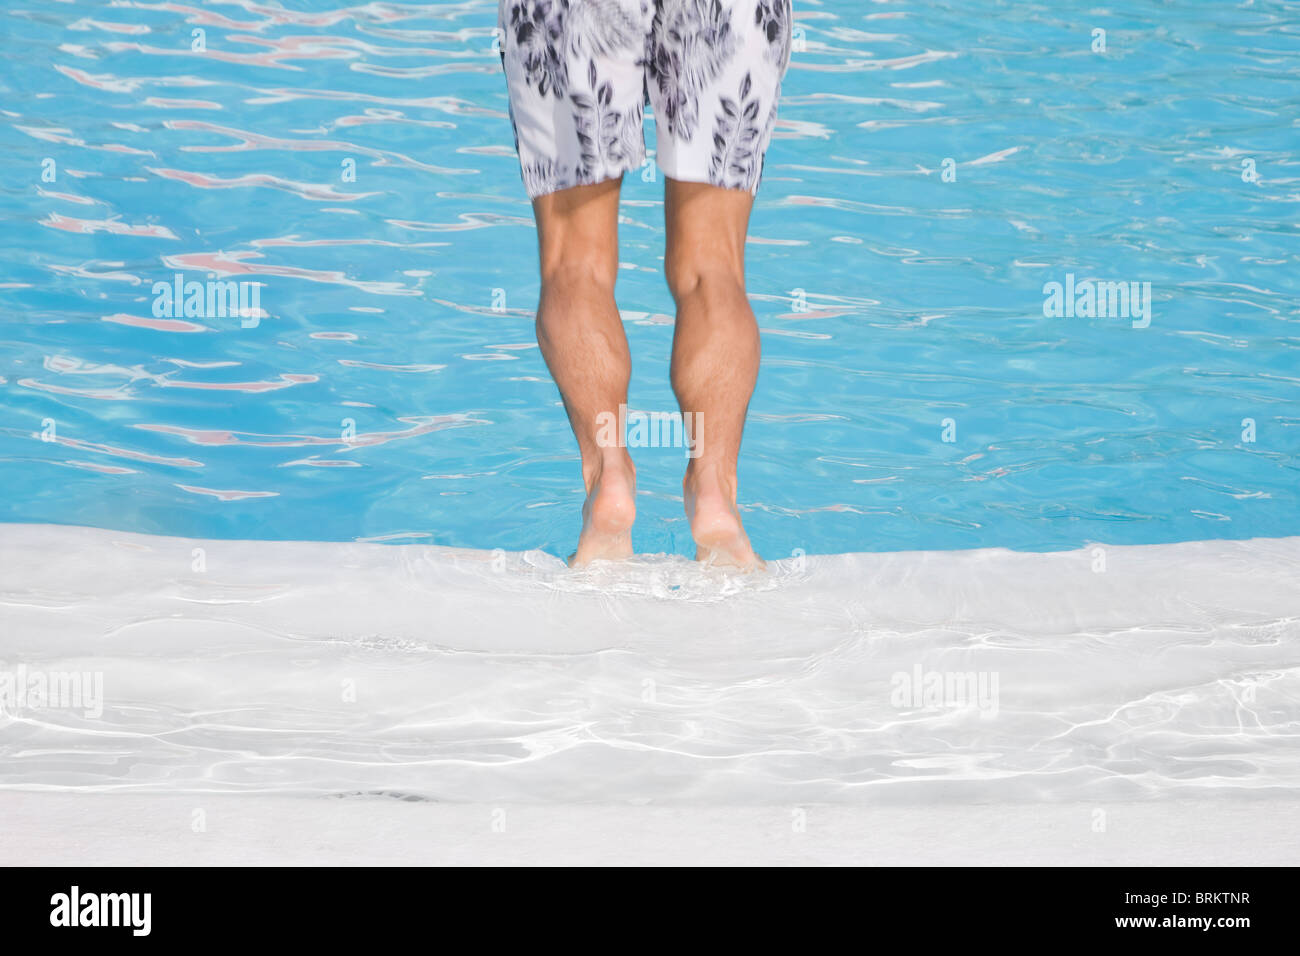 Hombre de zambullirse en una piscina azul en blanco y negro cortos Foto de stock